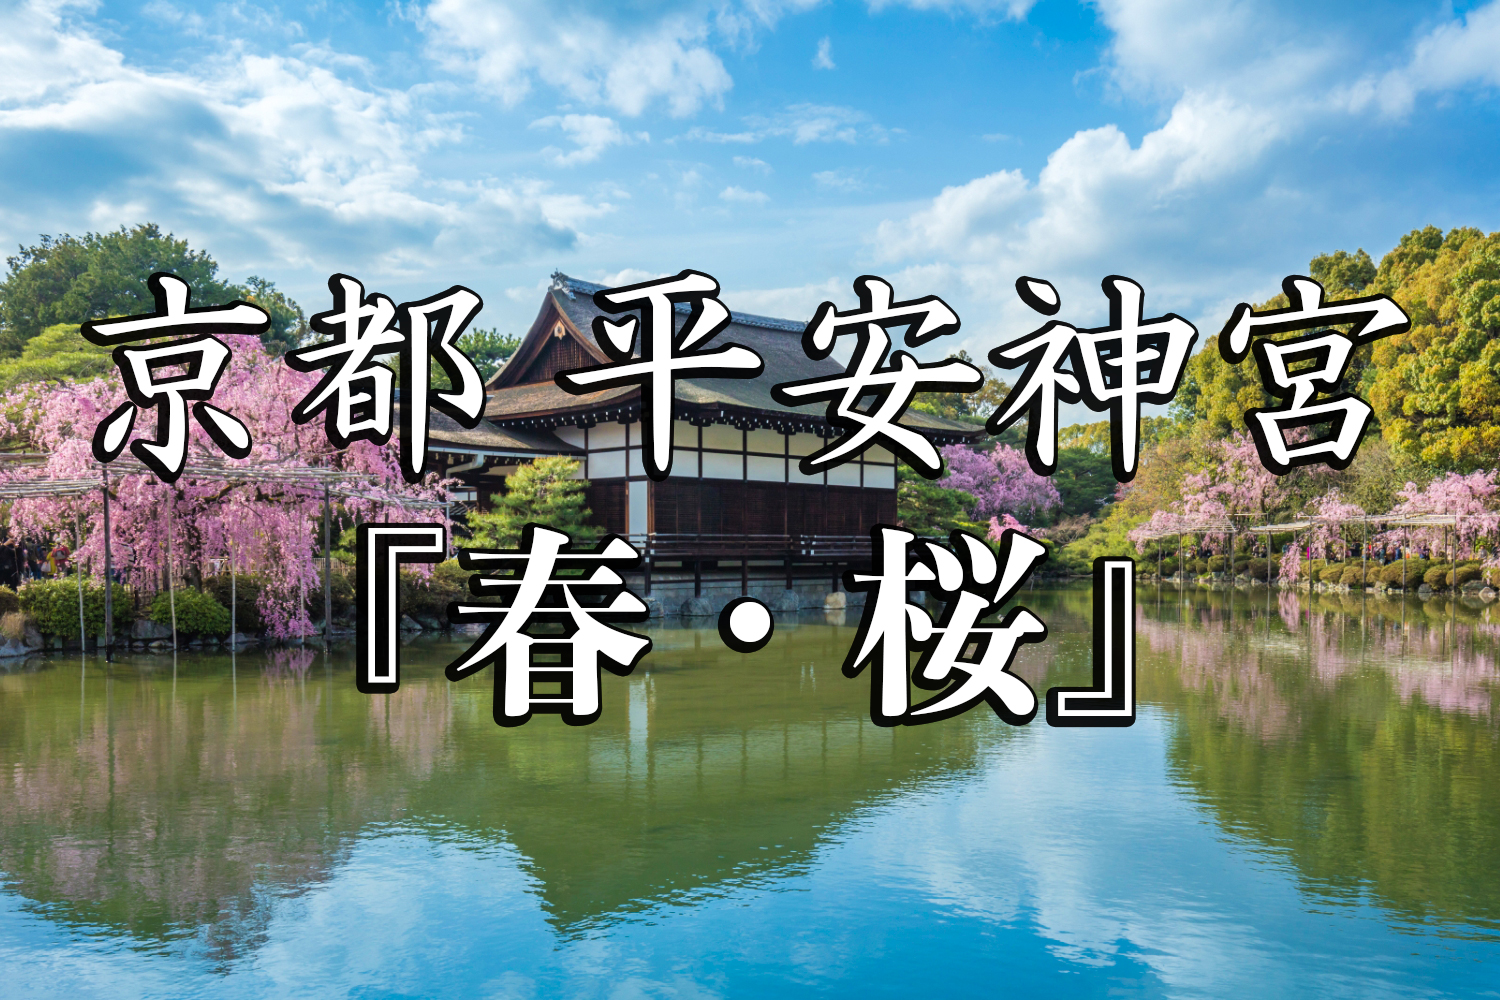 京都府 平安神宮 水面に映る桜の景色が美しい春におすすめ桜写真スポット 撮影した写真の紹介 アクセス情報など 写真や映像で紹介する関西 近畿の絶景カメラ 観光スポット